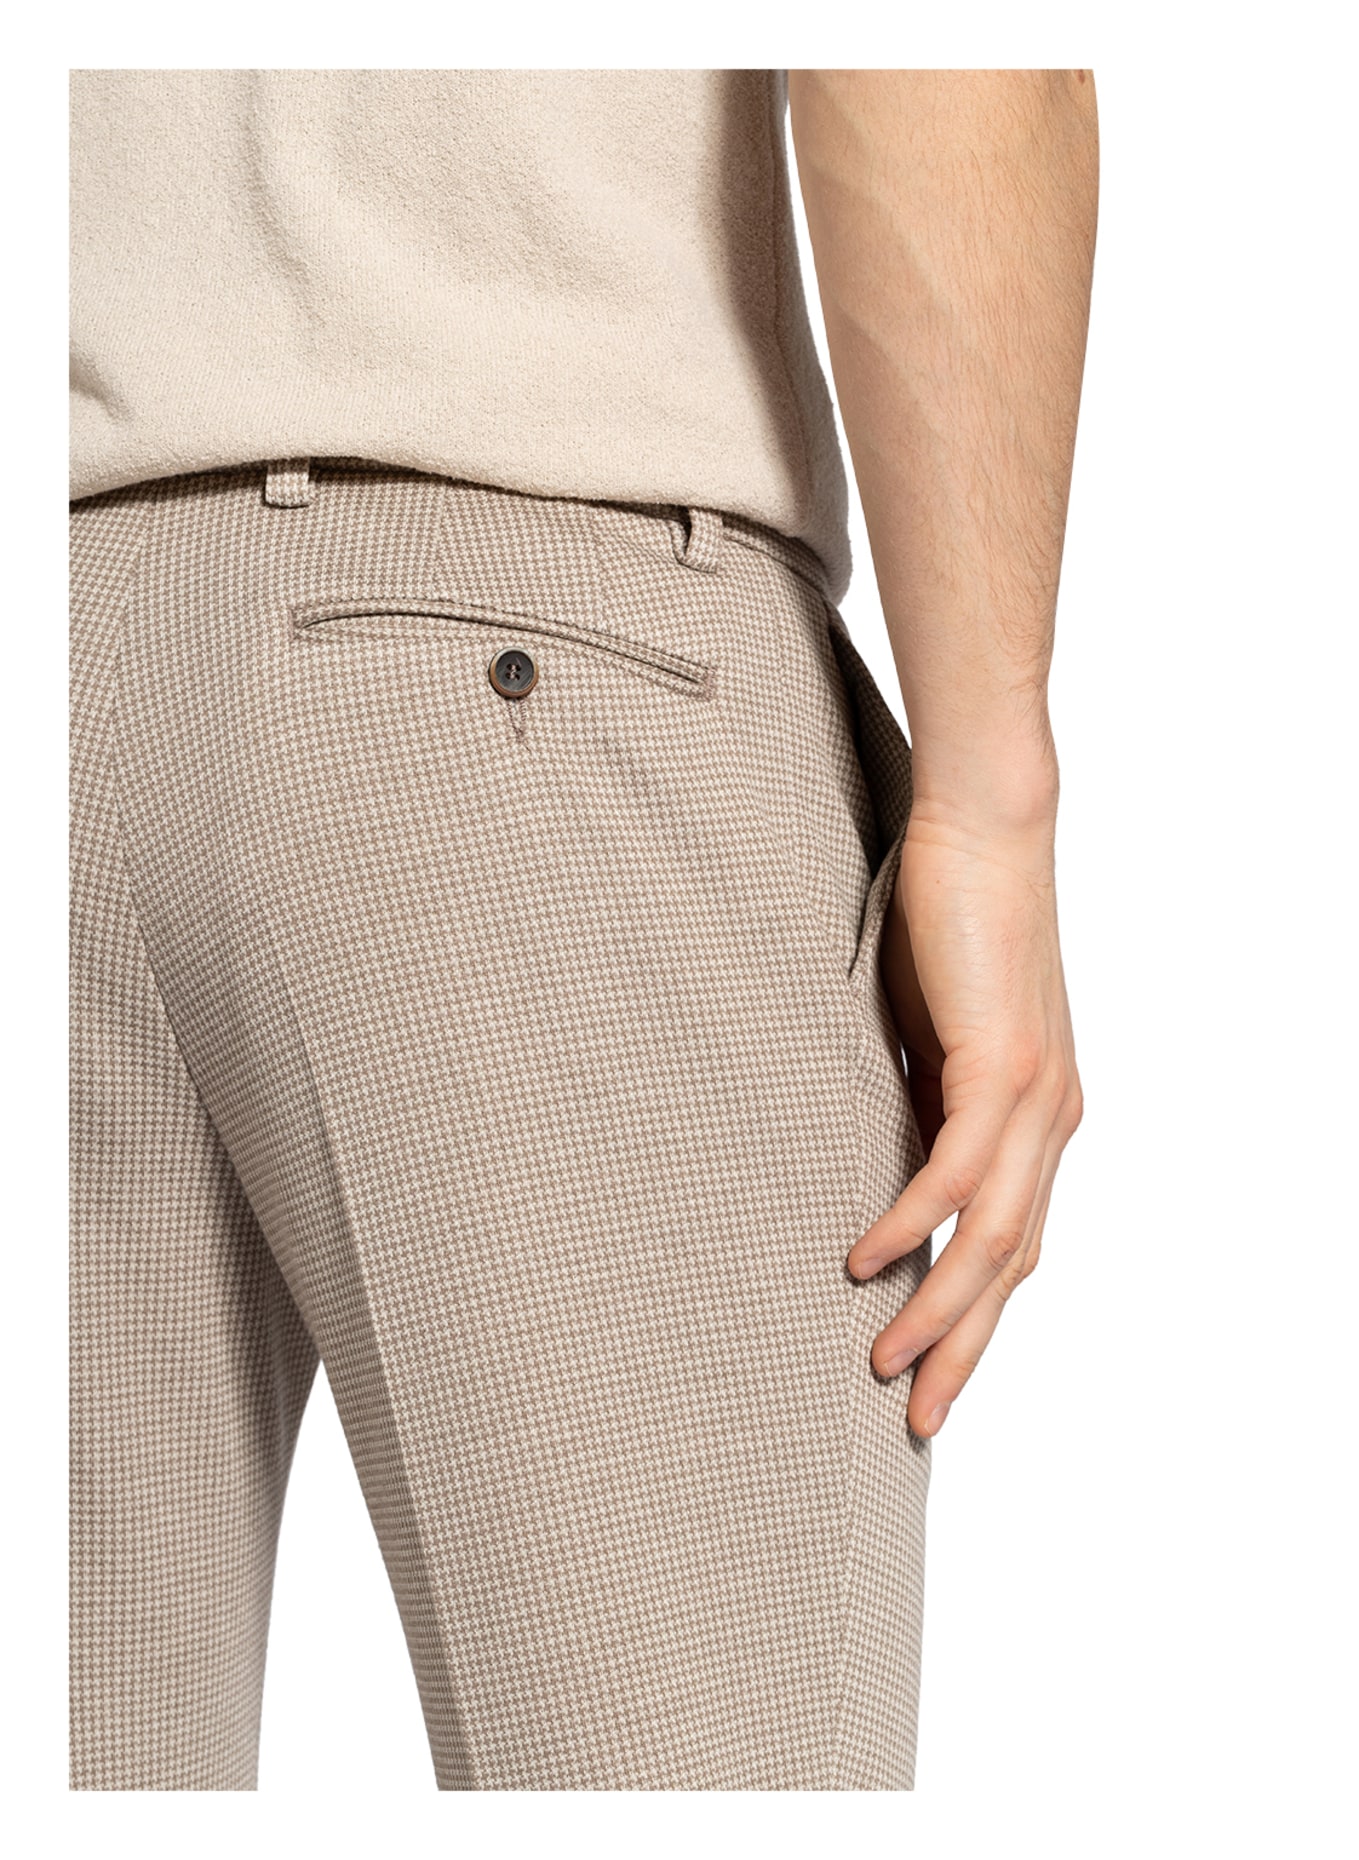 PAUL Suit trousers slim fit , Color: 280 BEIGE (Image 6)